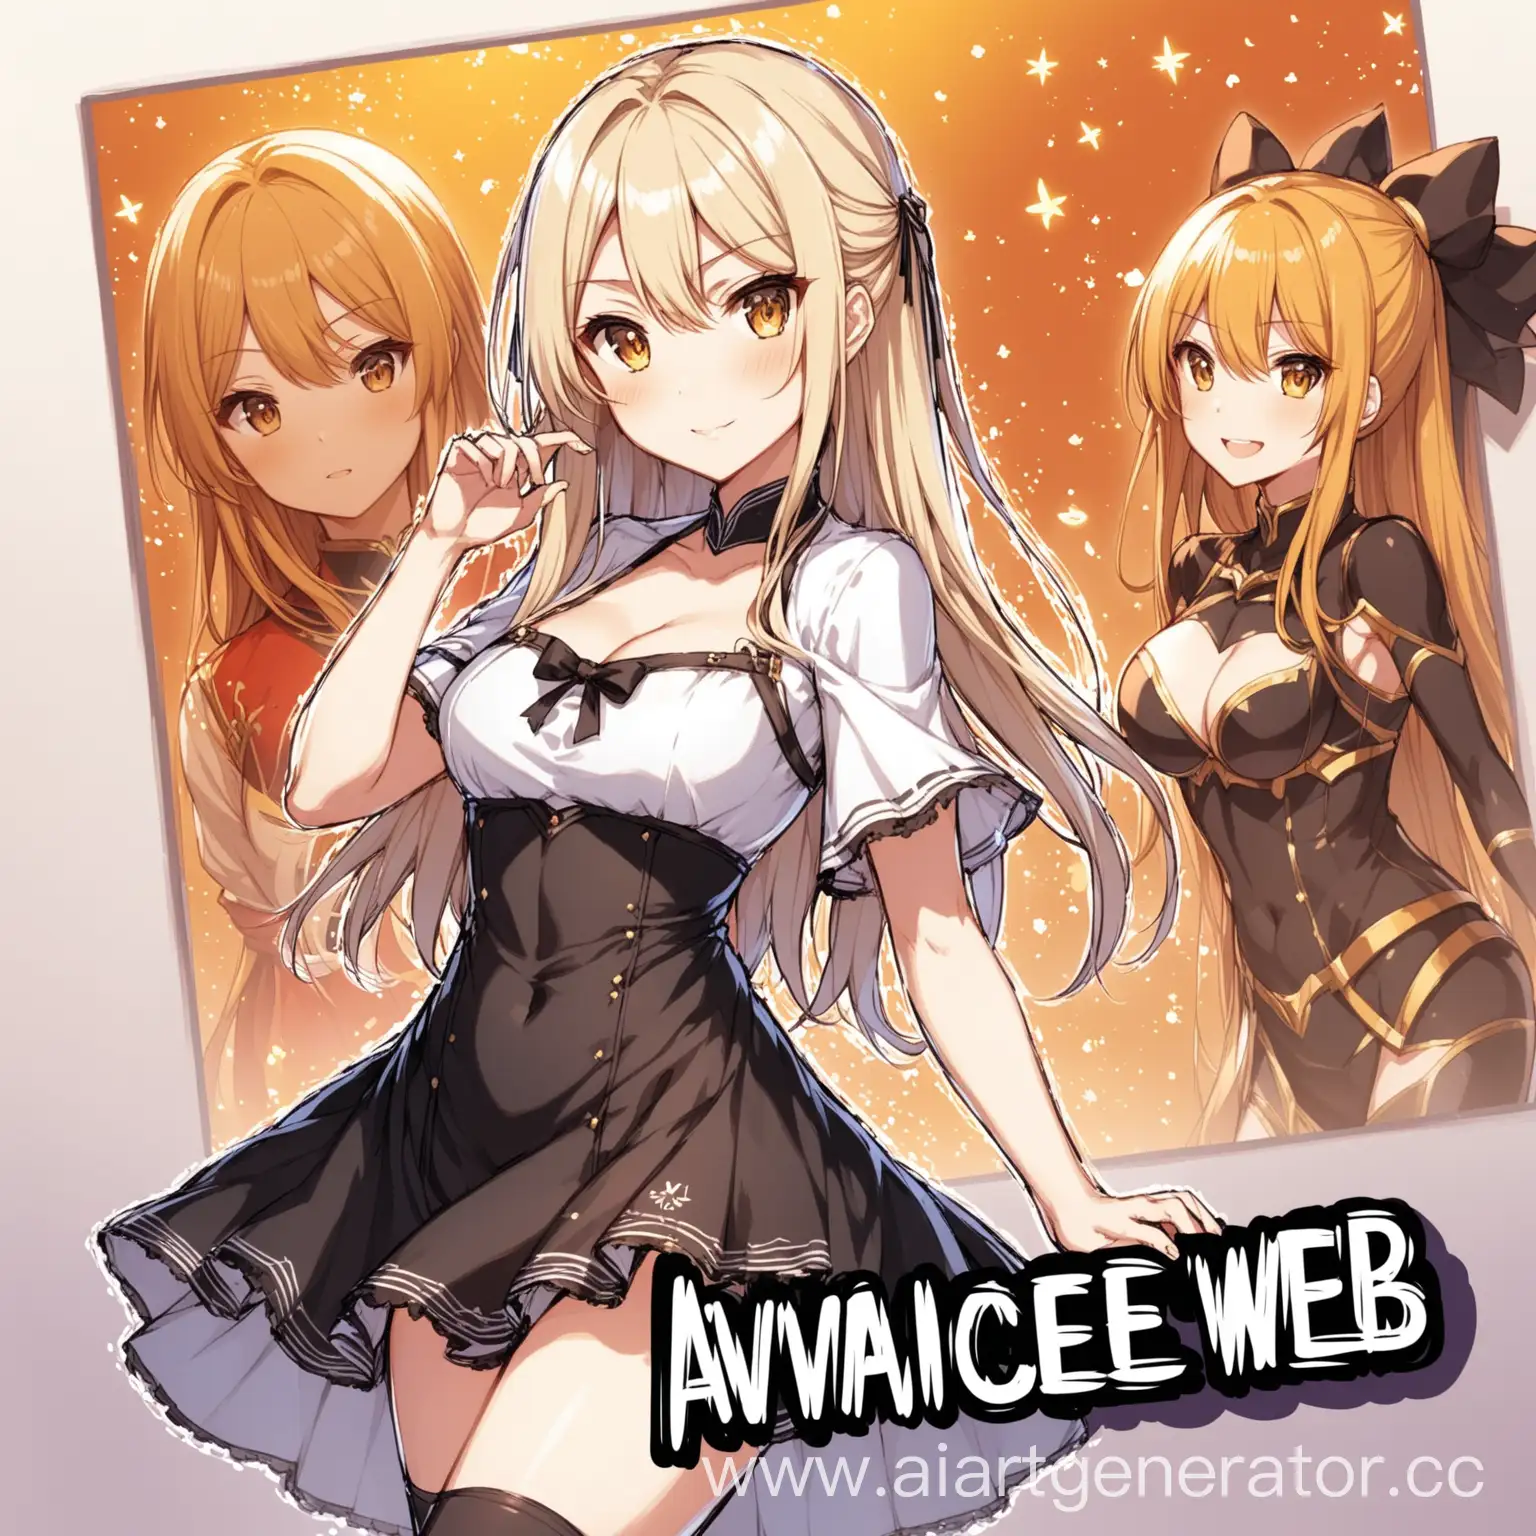 Anime-Girl-with-AvariceWeb-Inscription